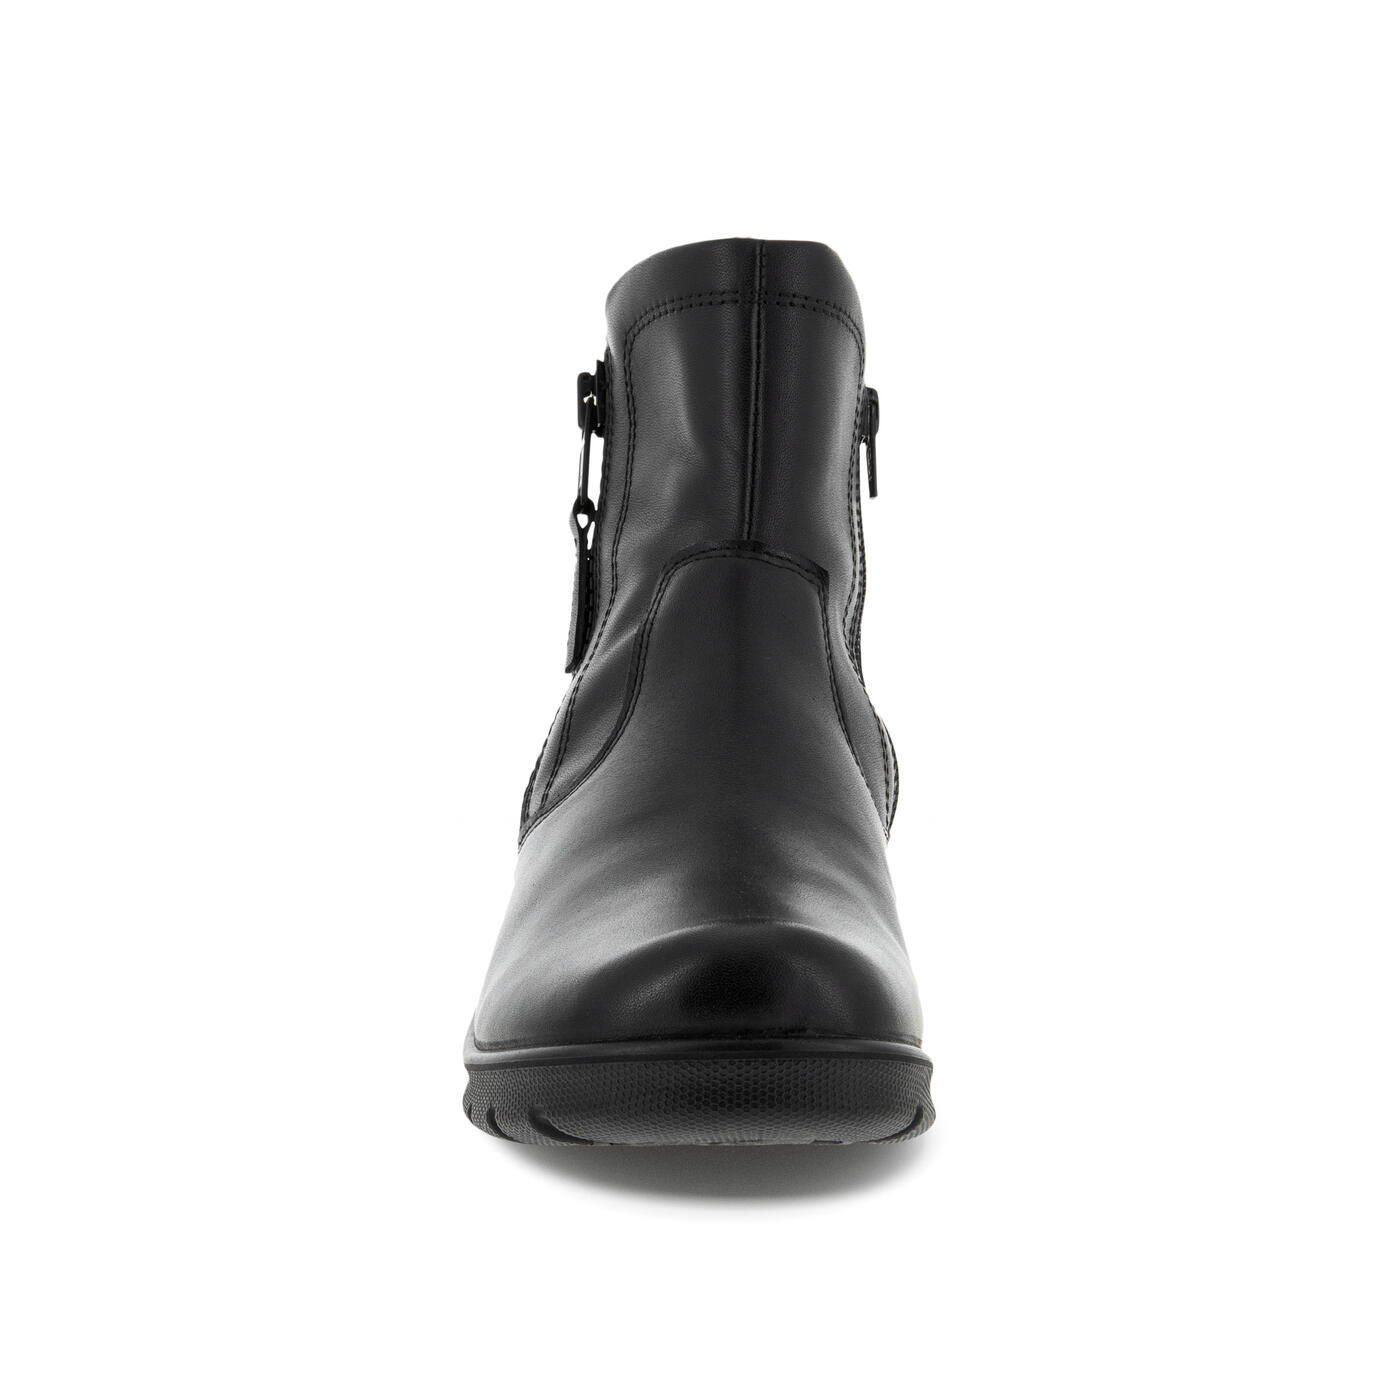 Babett Boots | Women's Boots | ECCO Shoes